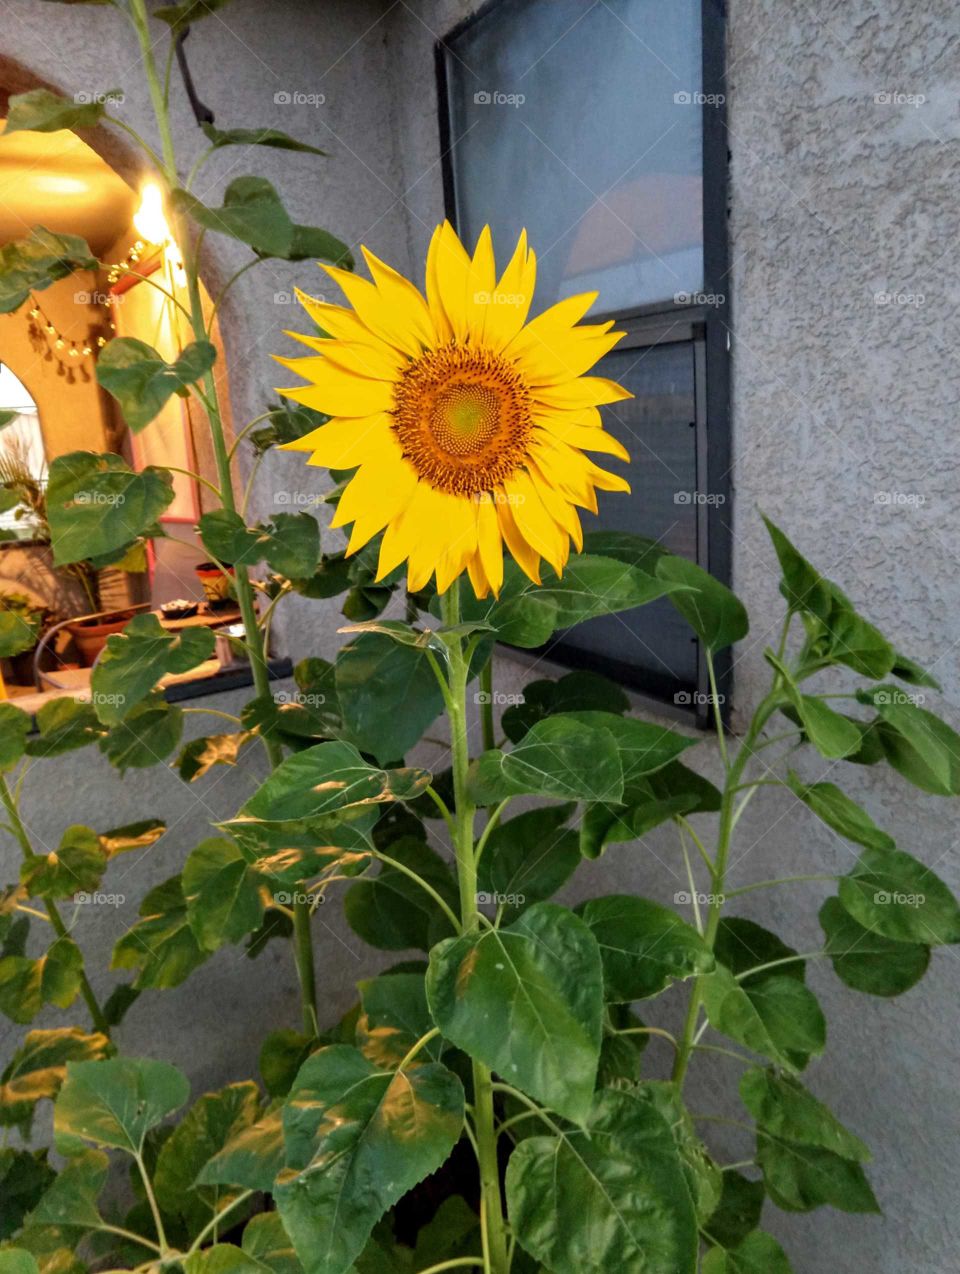 Sunflower Smiles!